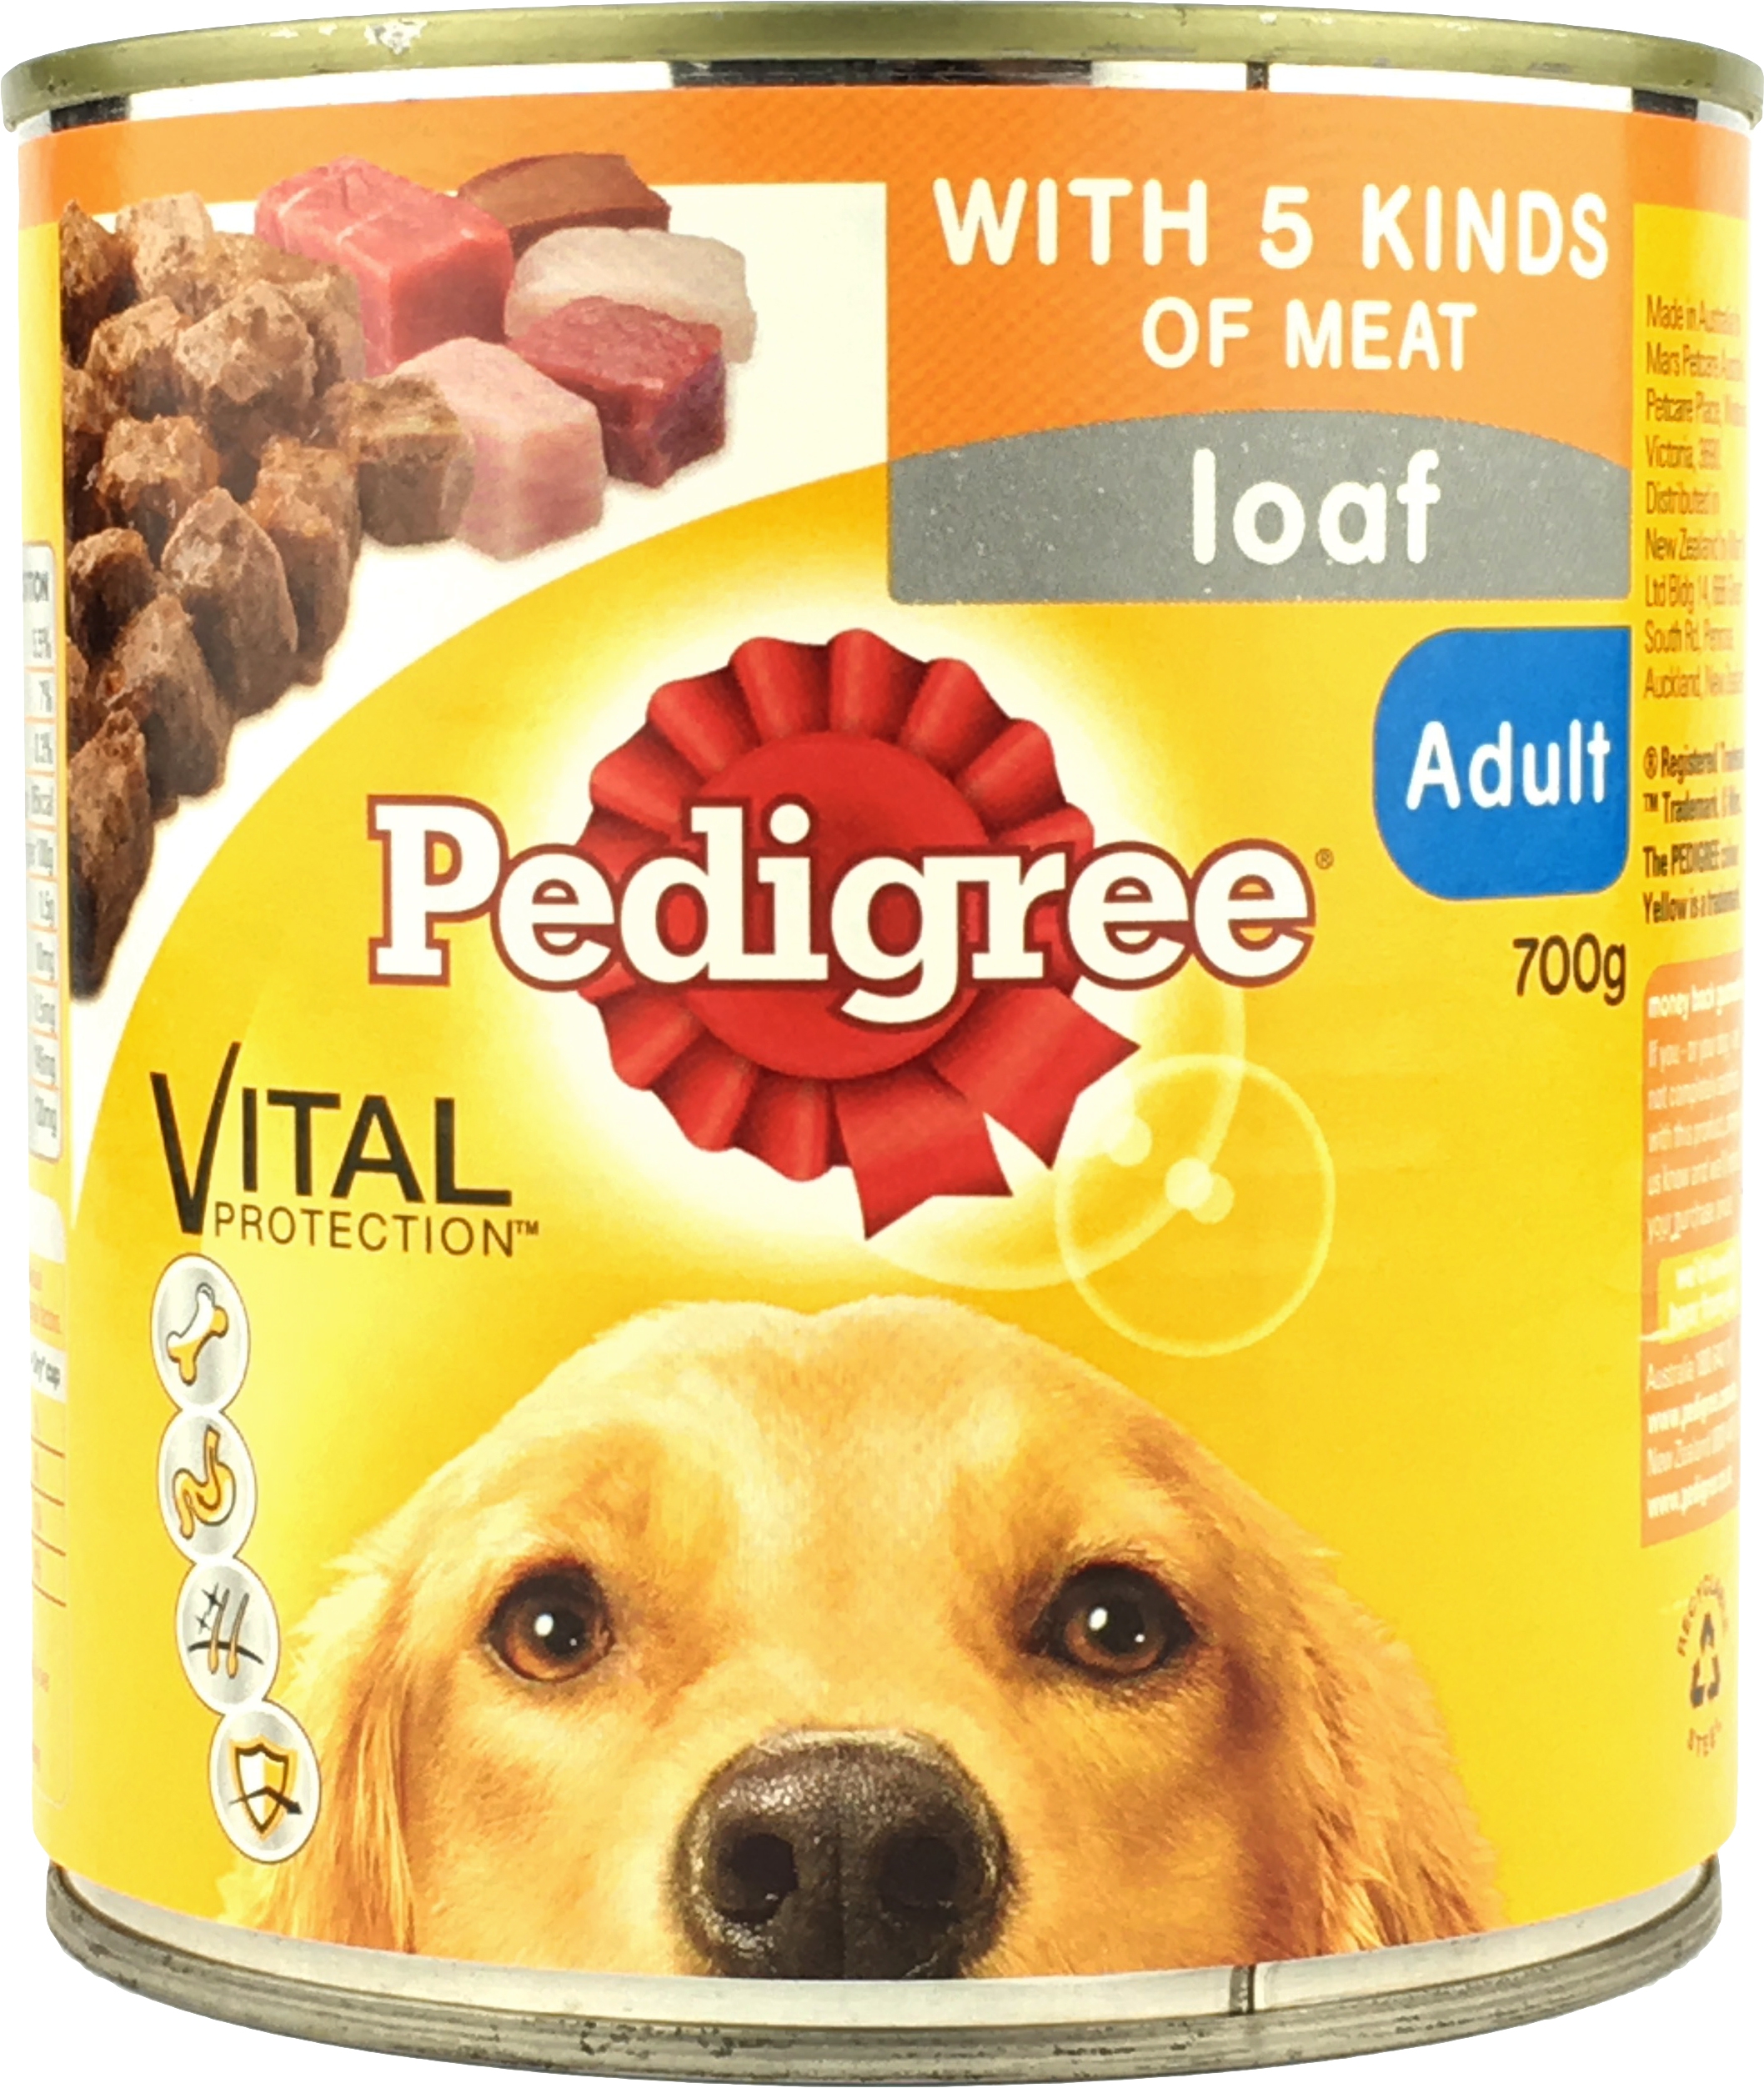 Pedigree 5 Kinds of Meat Loaf Canned Dog Food 700g